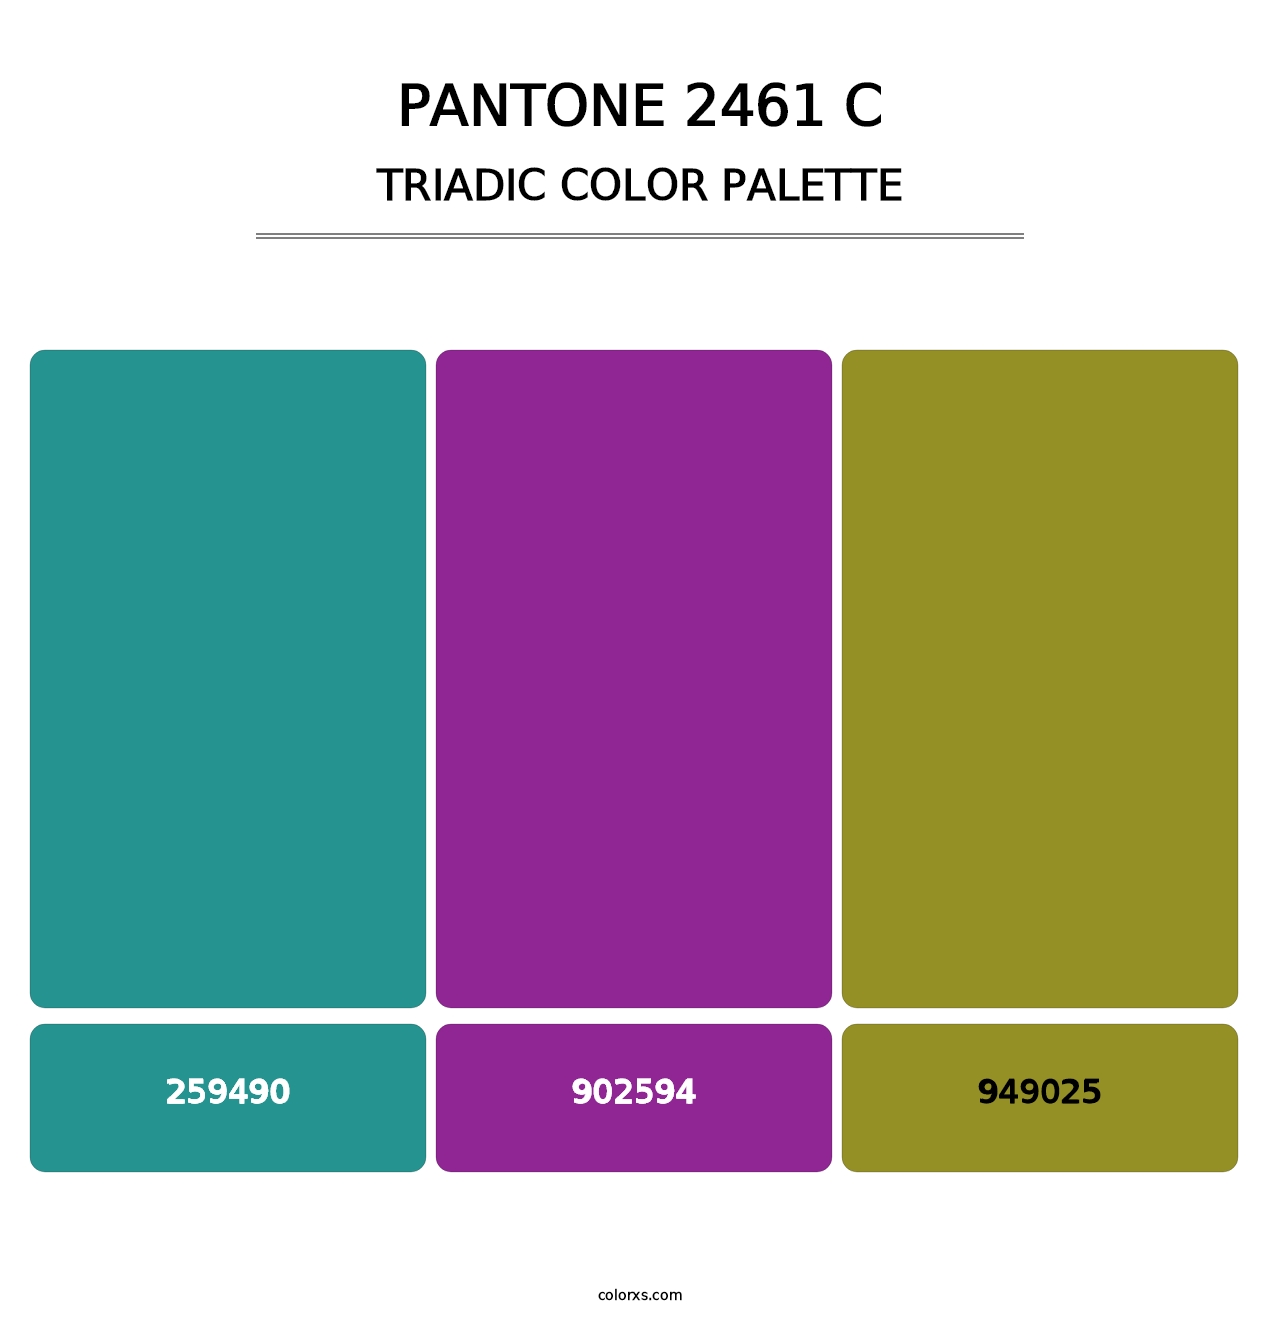 PANTONE 2461 C - Triadic Color Palette